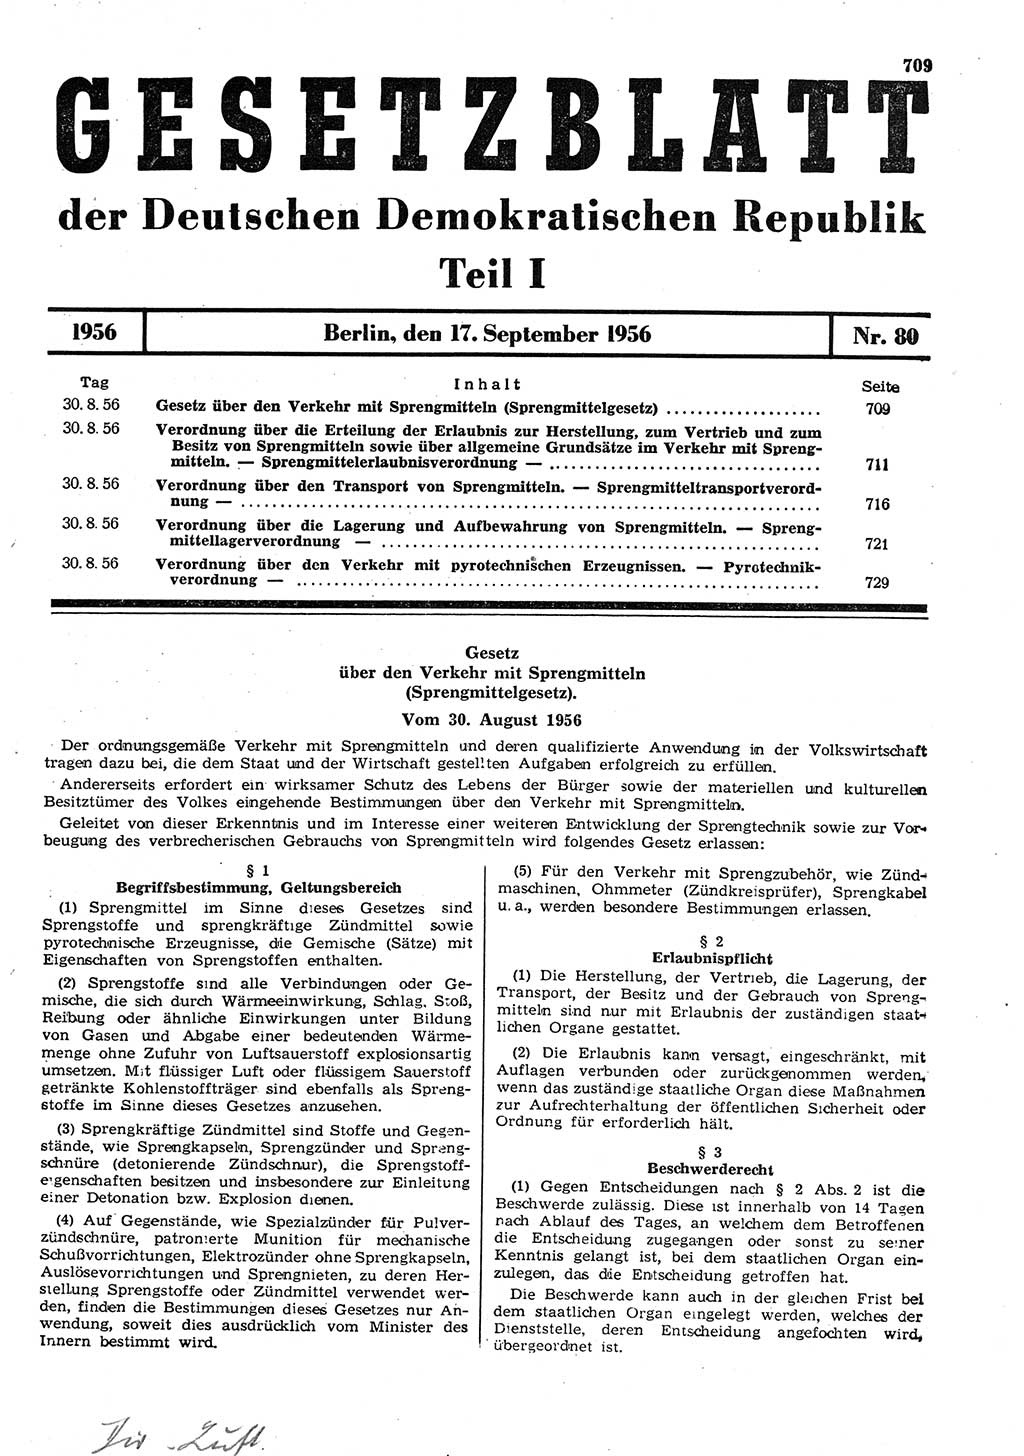 Gesetzblatt (GBl.) der Deutschen Demokratischen Republik (DDR) Teil Ⅰ 1956, Seite 709 (GBl. DDR Ⅰ 1956, S. 709)